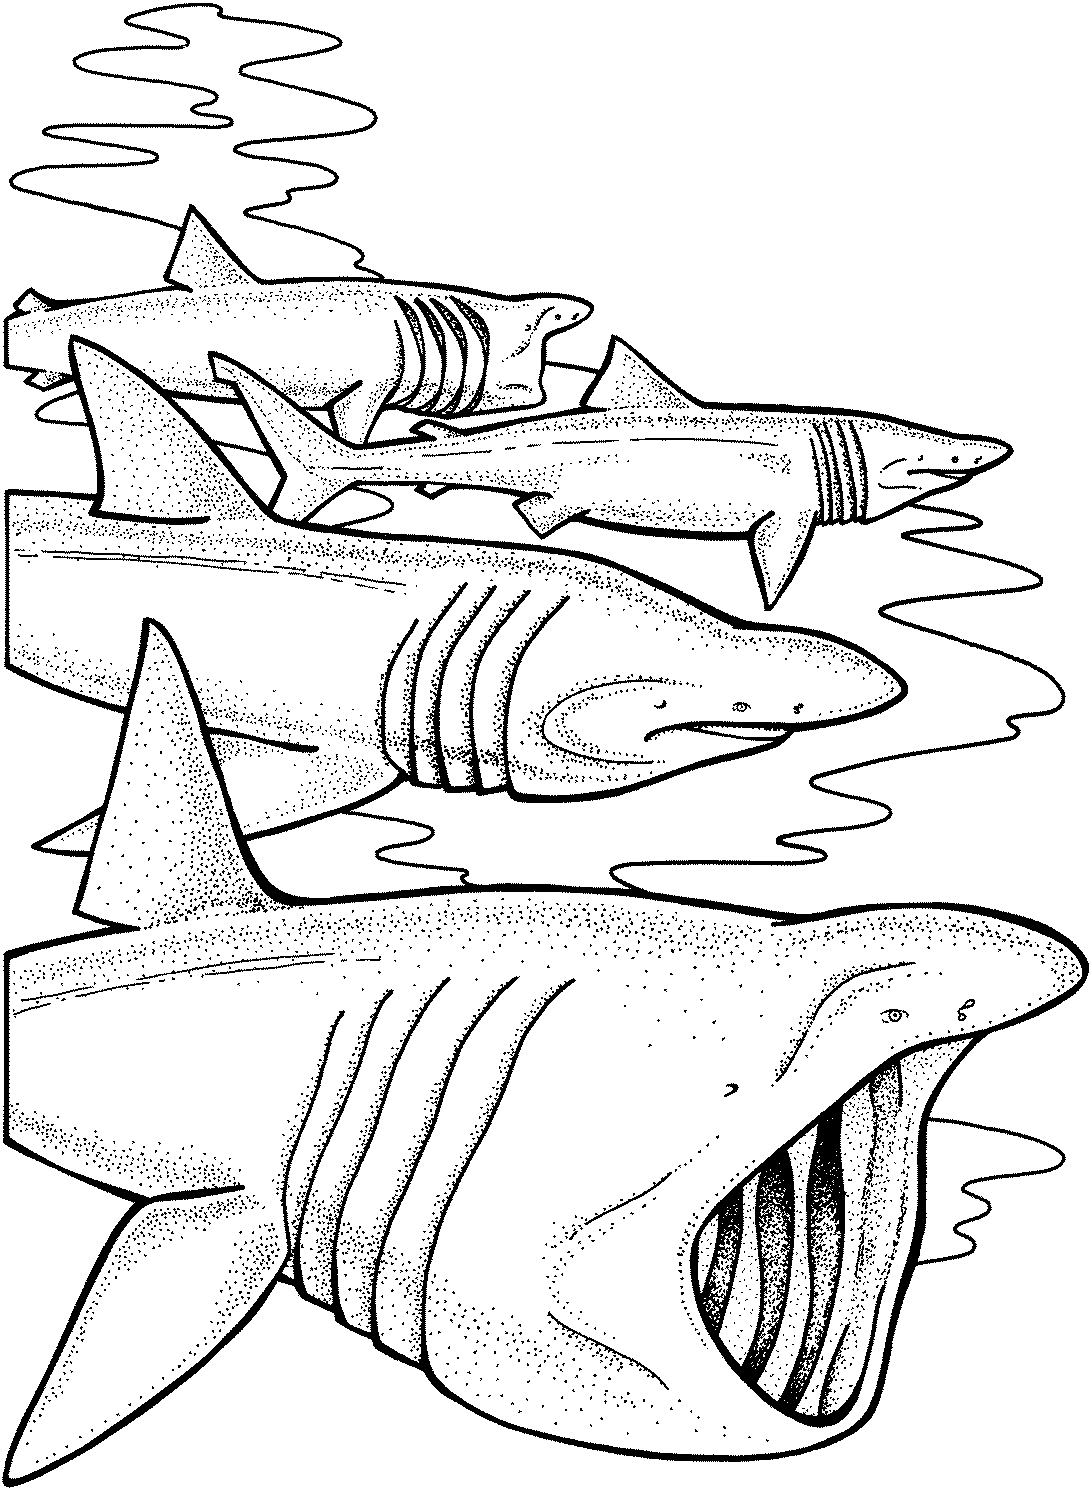 Reuzenhaaien zwemmen vaak in paren of grote groepen Kleurplaat